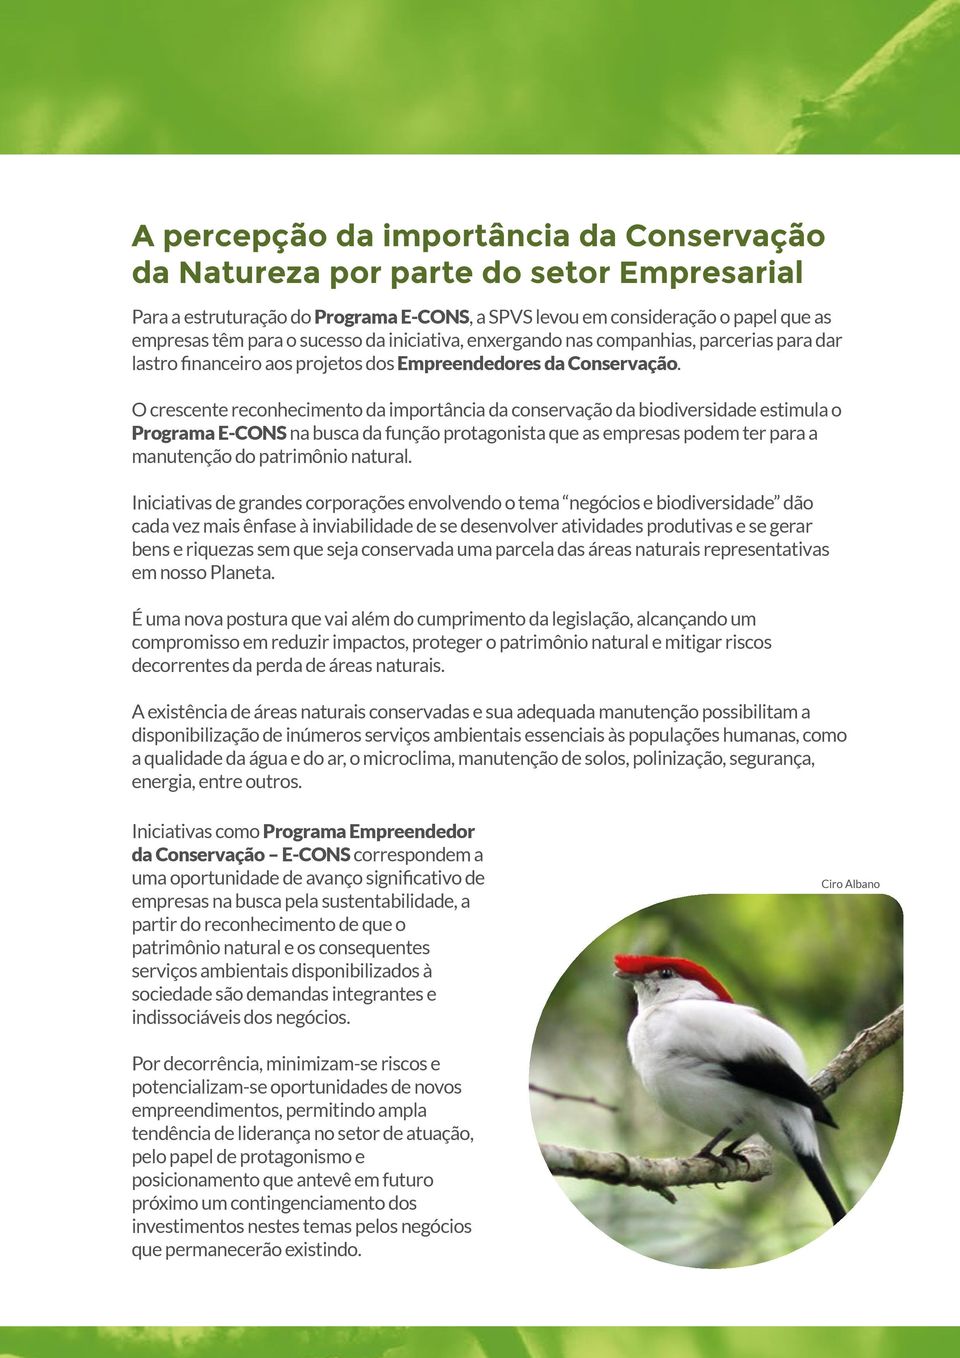 O crescente reconhecimento da importância da conservação da biodiversidade estimula o Programa E-CONS na busca da função protagonista que as empresas podem ter para a manutenção do patrimônio natural.